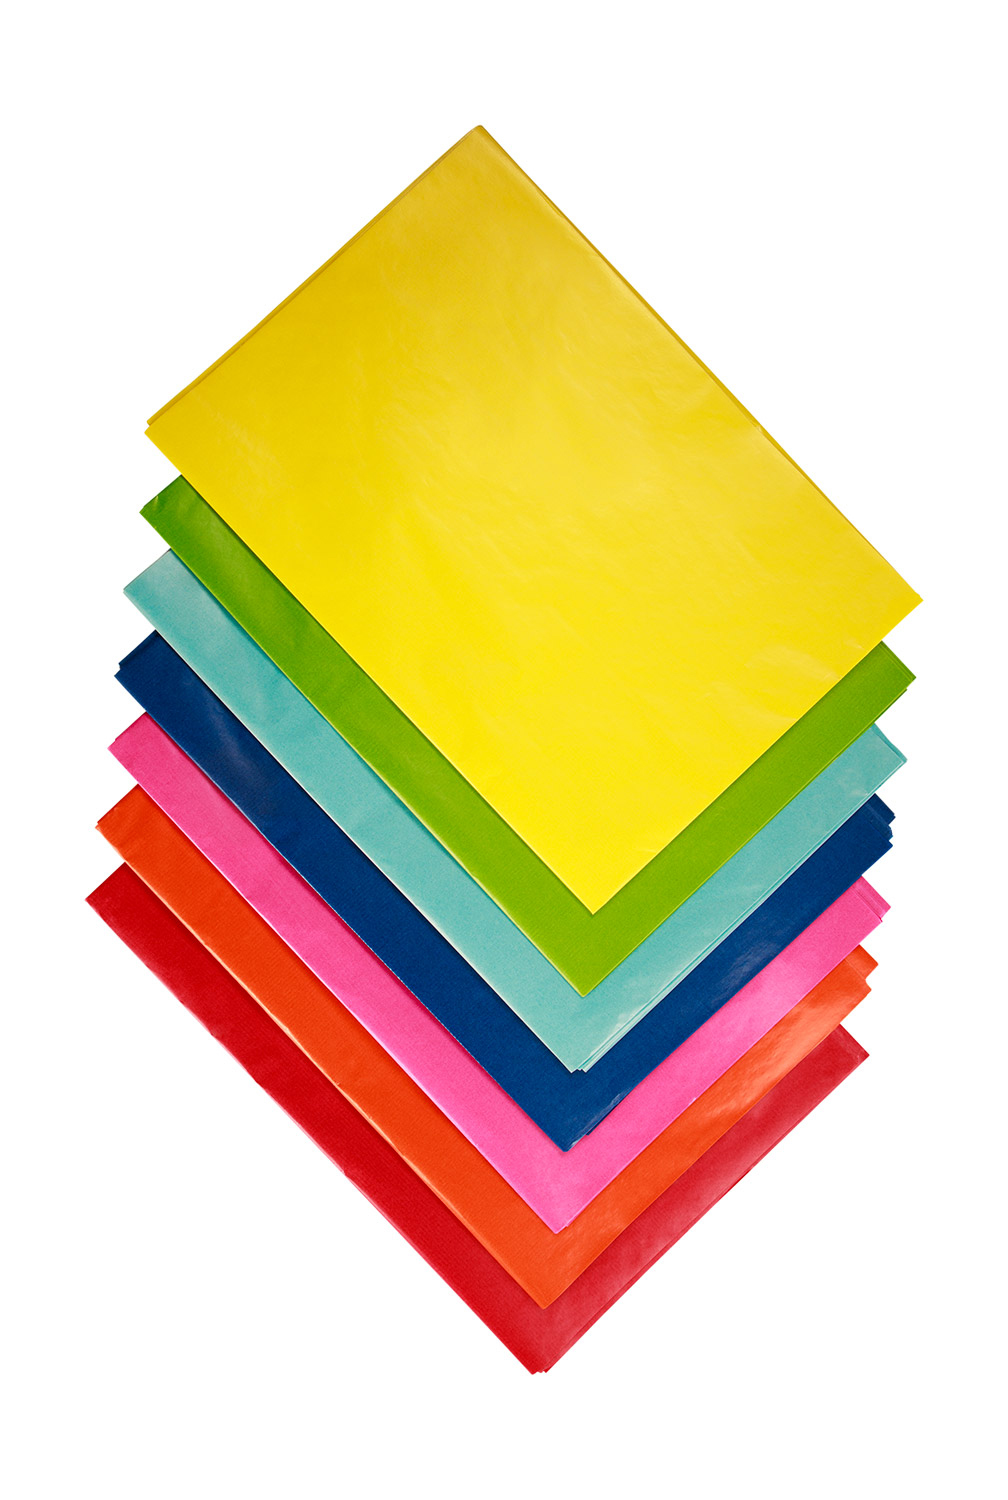 Transparentpapier (Drachenpapier) Einzelfarben gelb